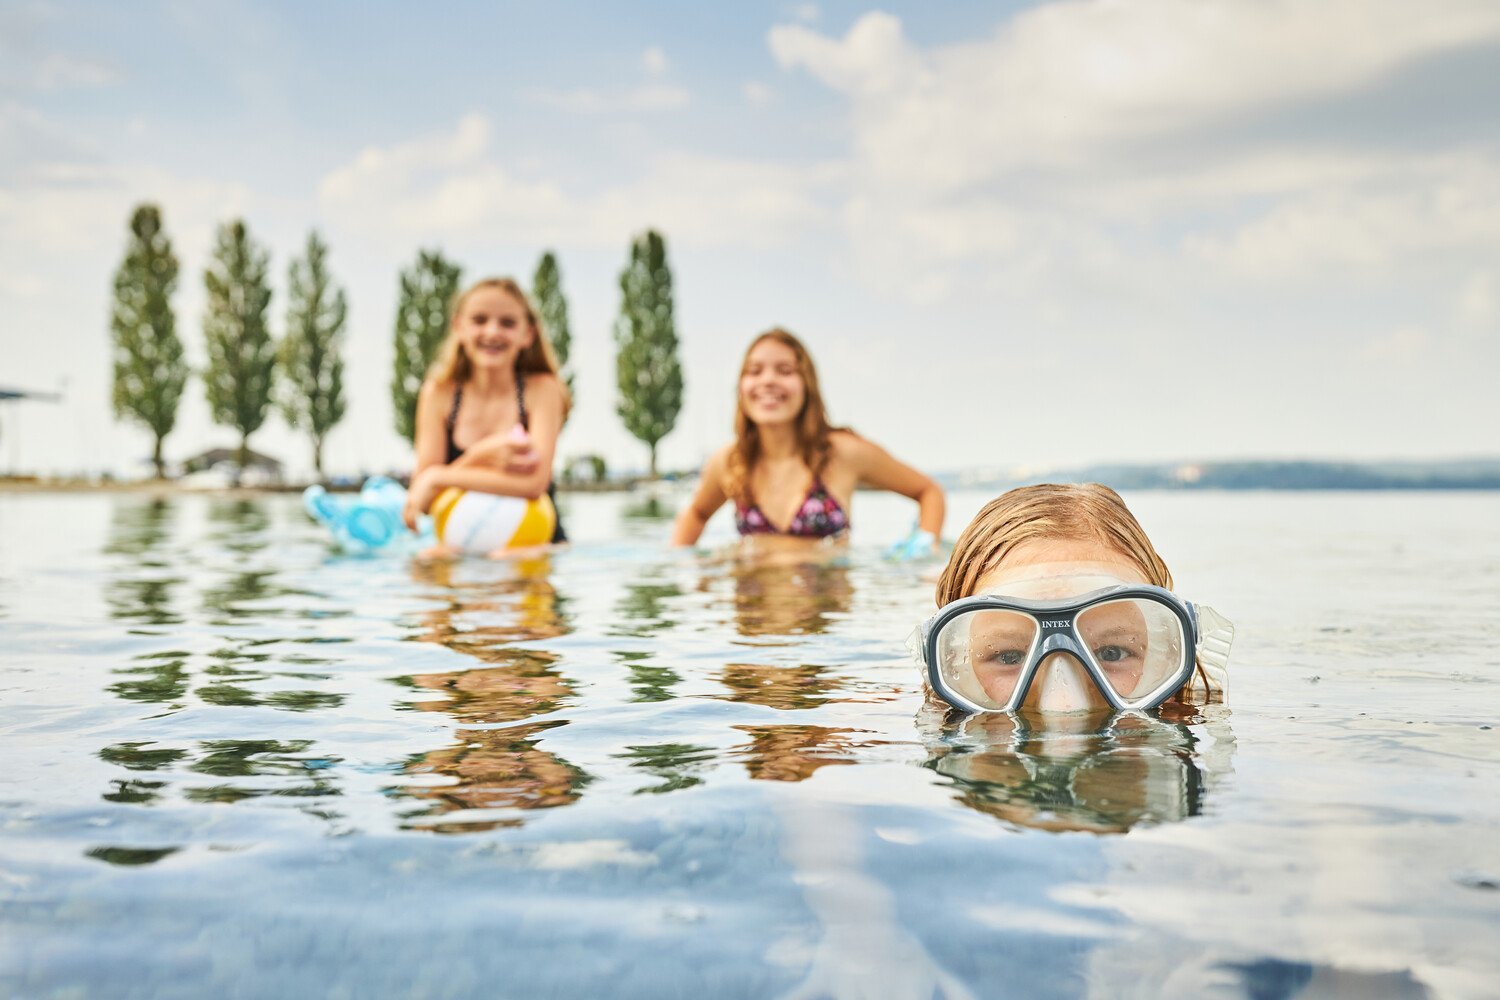 Sommer, Sonne, Bodensee - erfrischendes Bad im Bodensee